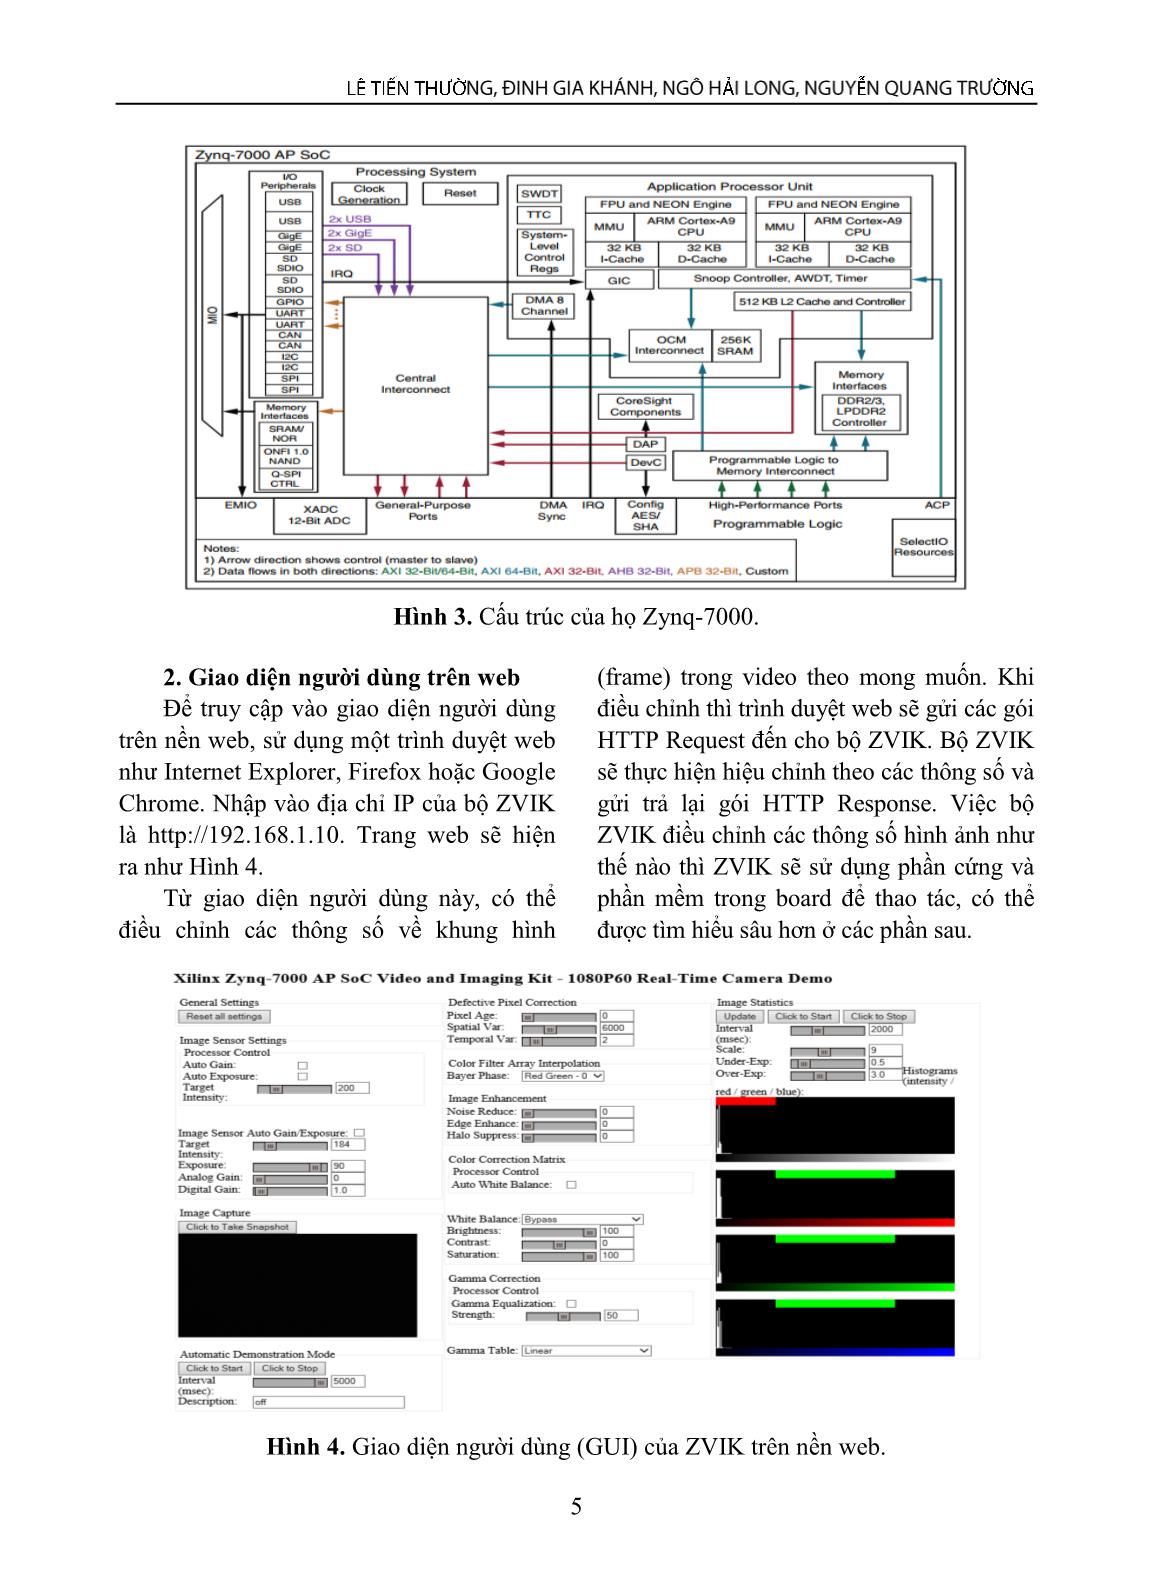 Ứng dụng công cụ mới trên nền tảng FPGA vào xử lý ảnh và video trang 3